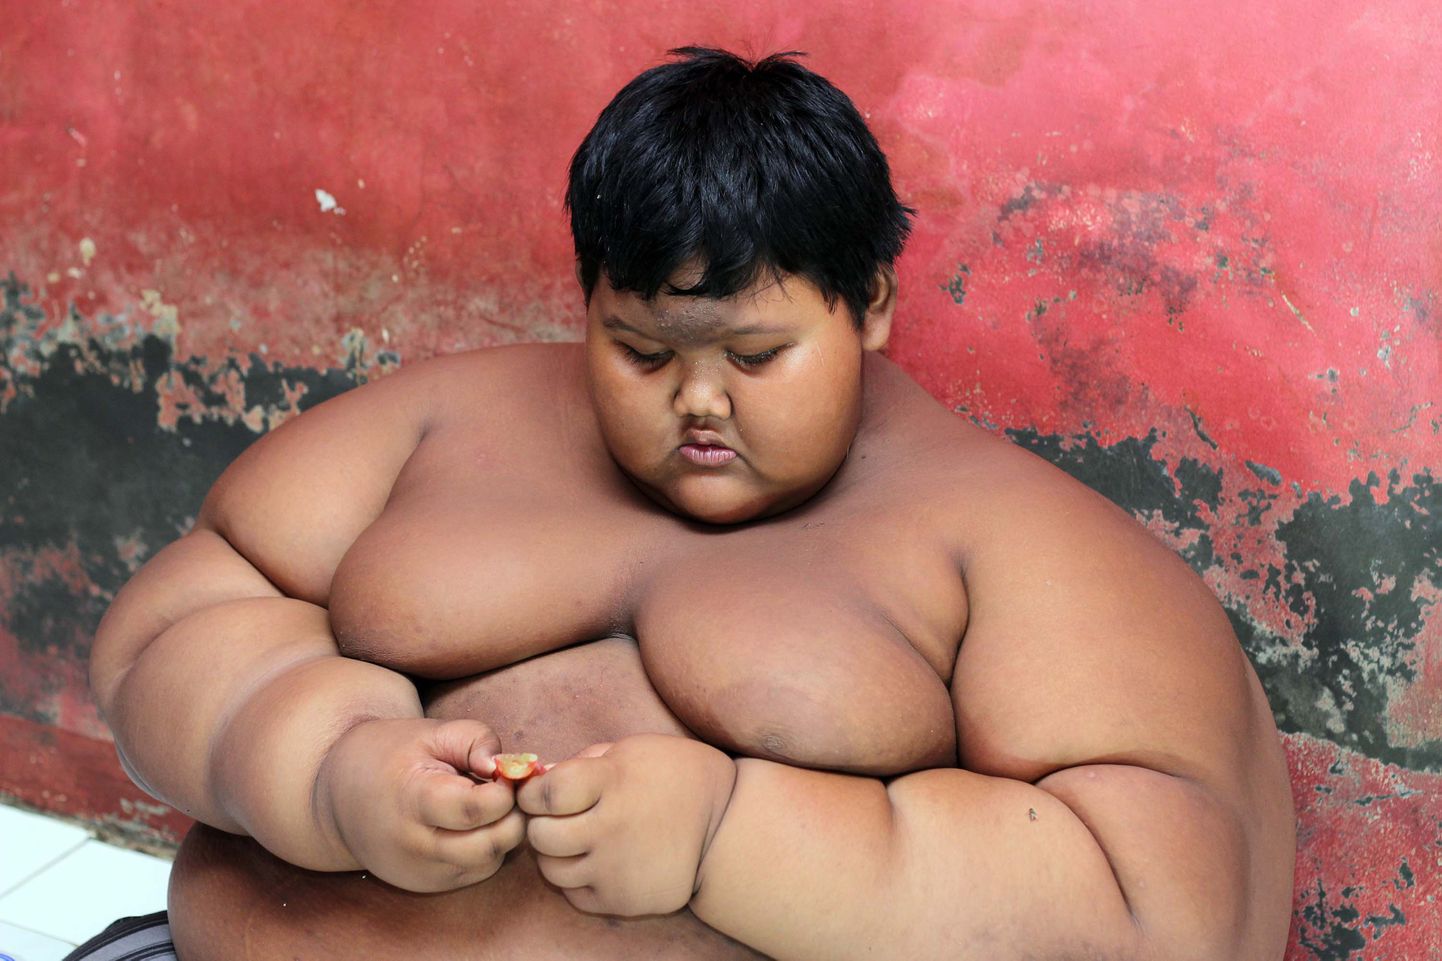 Арья Пермана, 12-летний мальчик из Индонезии, который весил более 190 кг, сбросил больше половины веса.